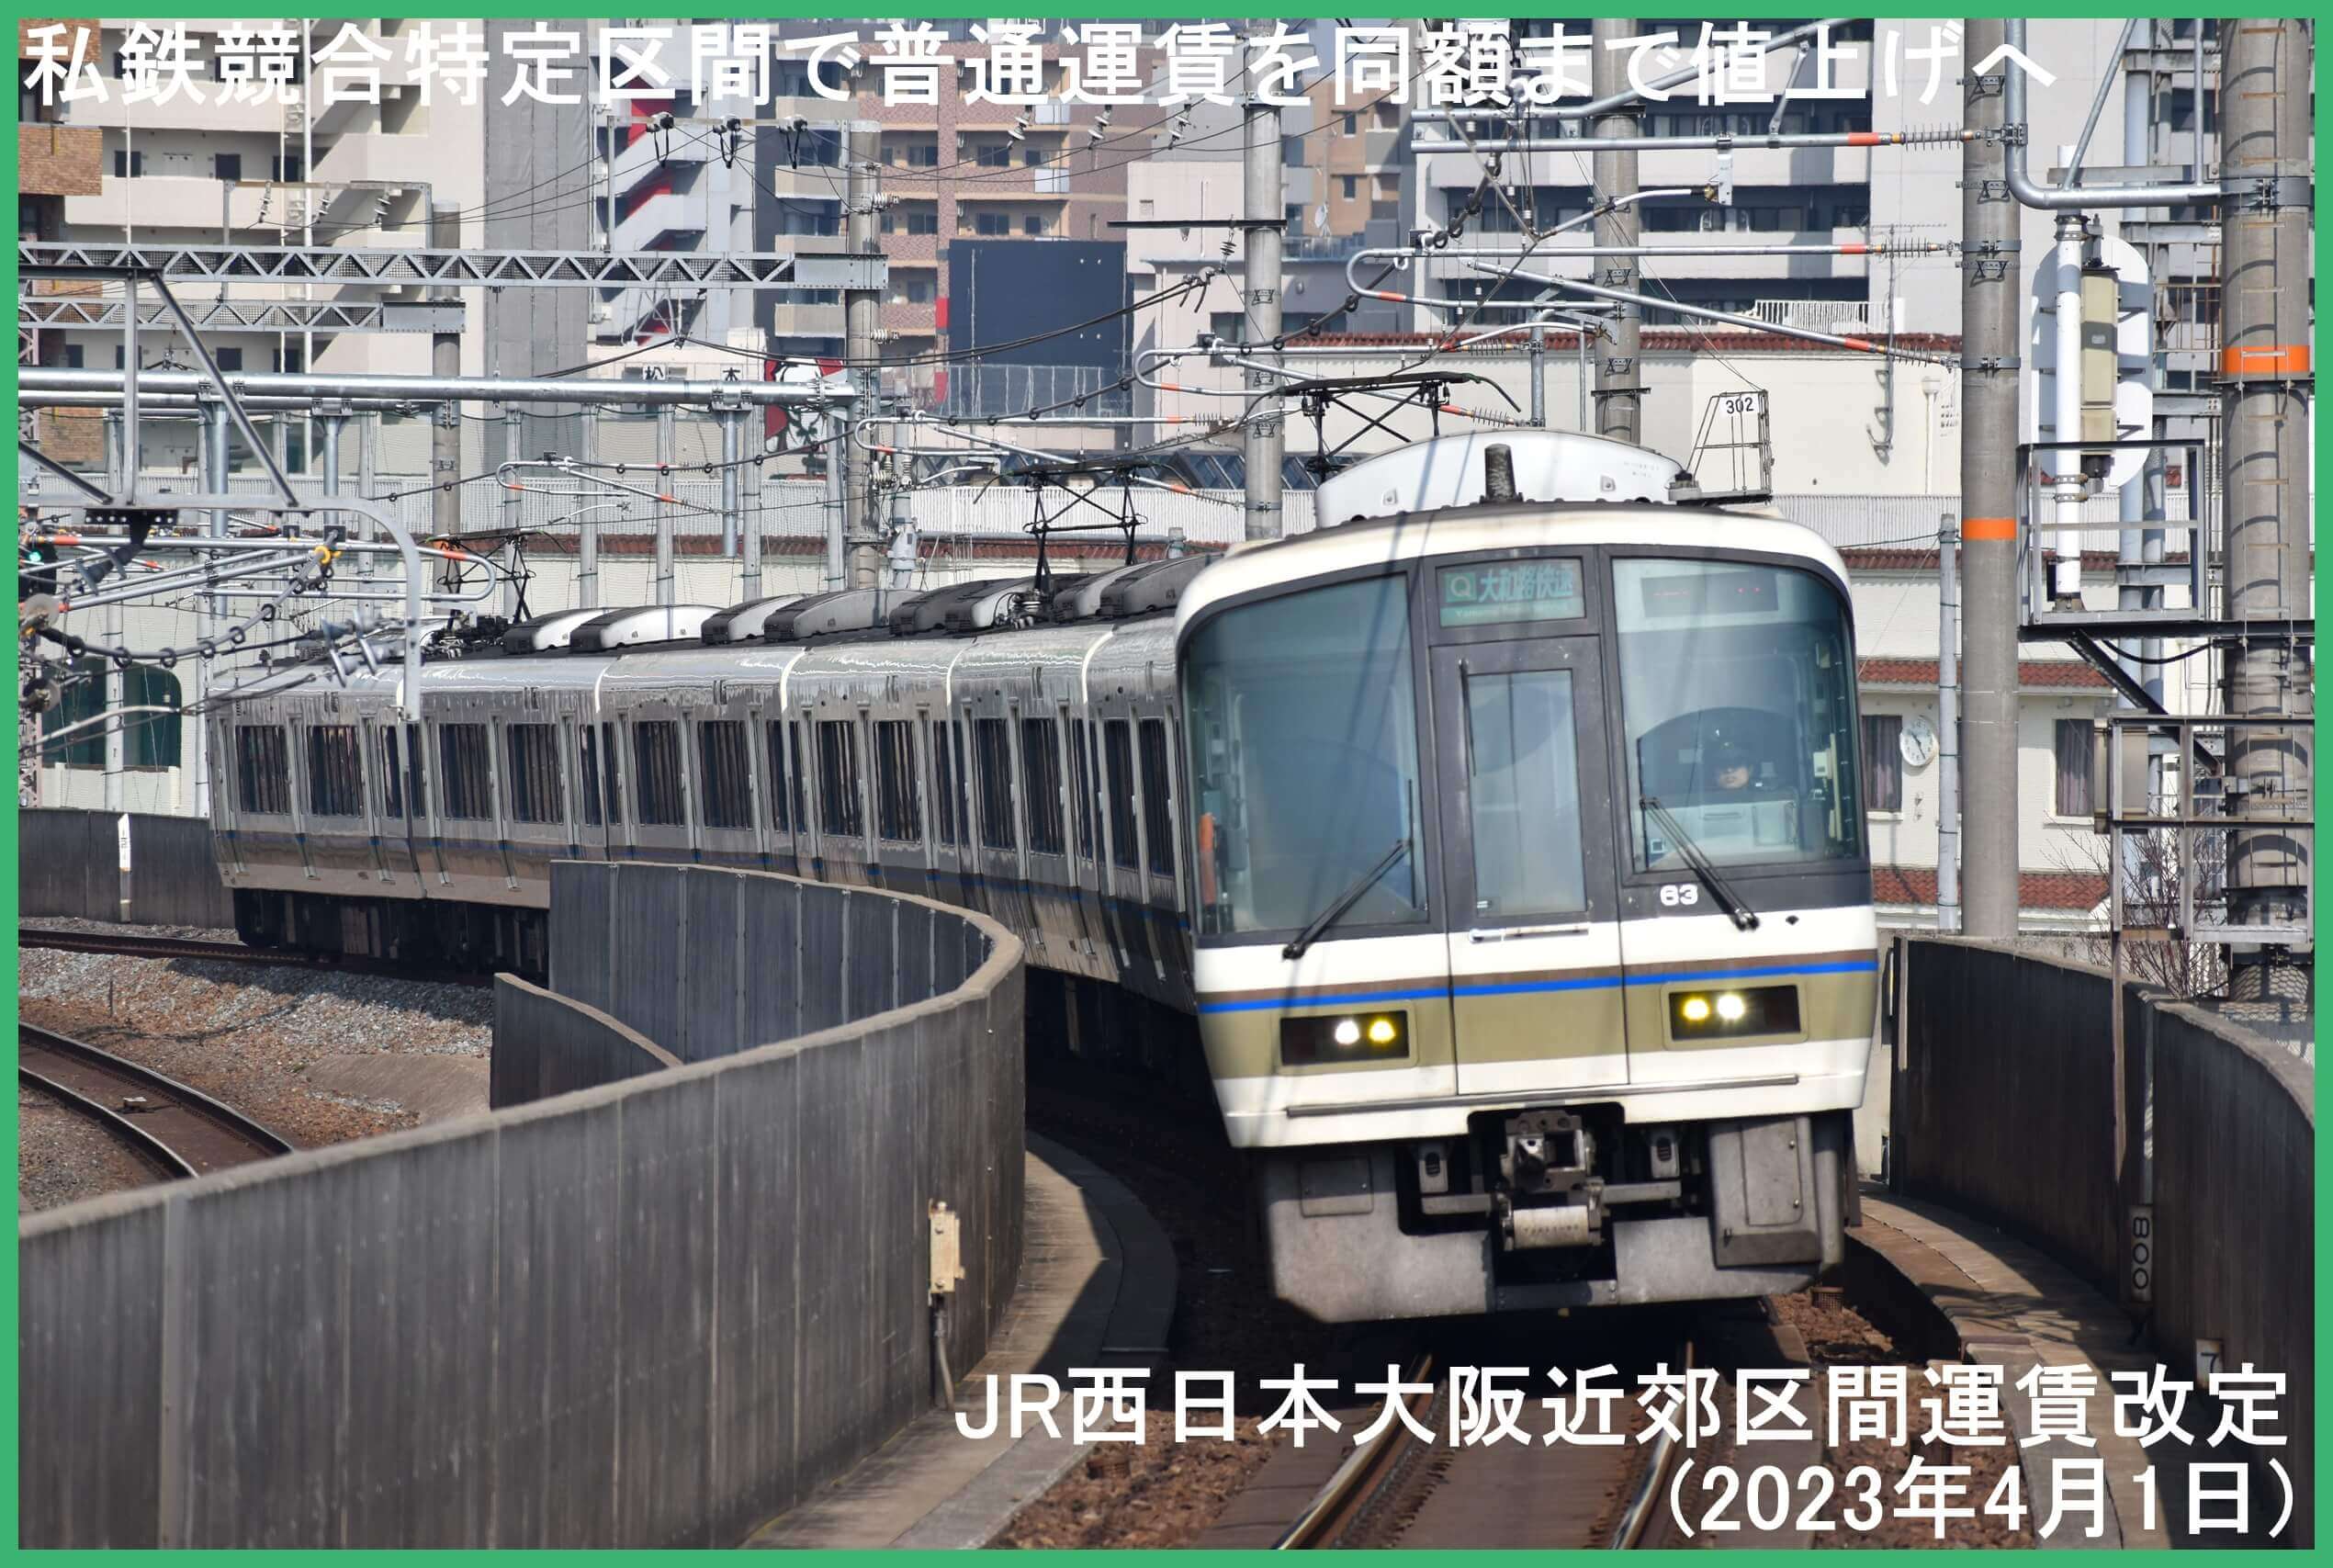 私鉄競合特定区間で普通運賃を同額まで値上げへ　JR西日本大阪近郊区間運賃改定(2023年4月1日)